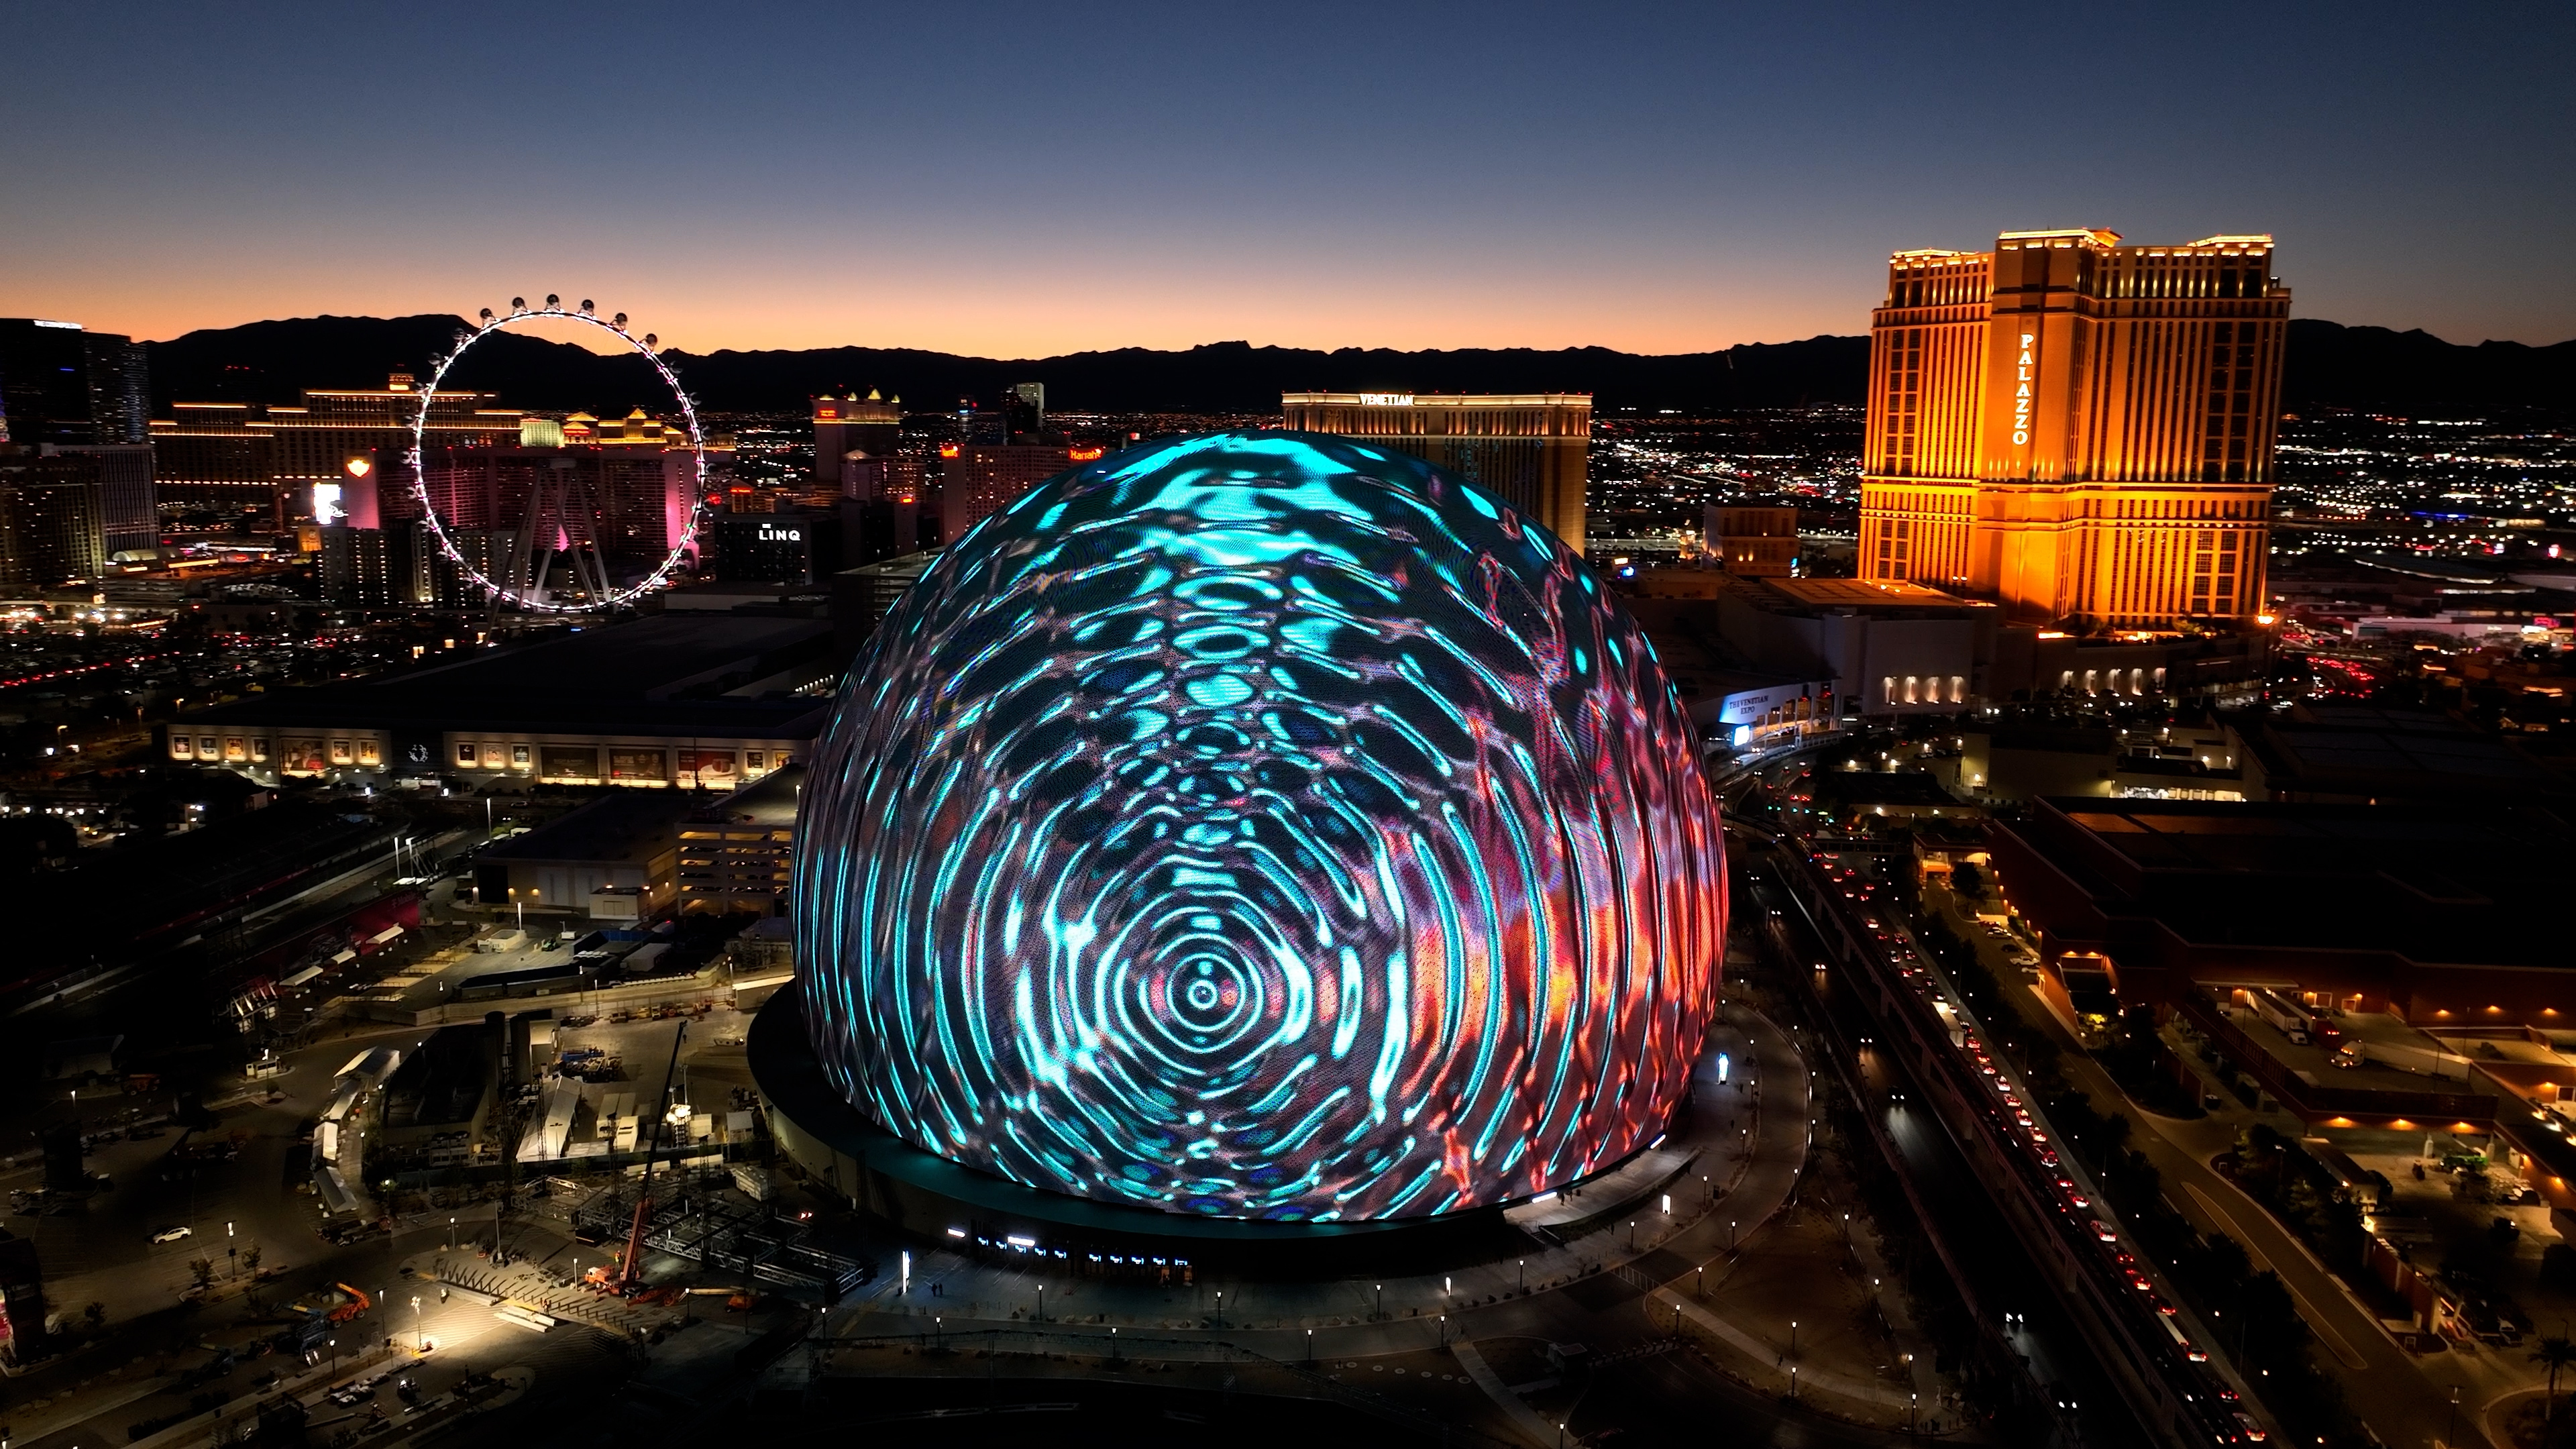 SPHERE en Las Vegas anuncia nueva residencia con narraciones visuales nunca antes vistas